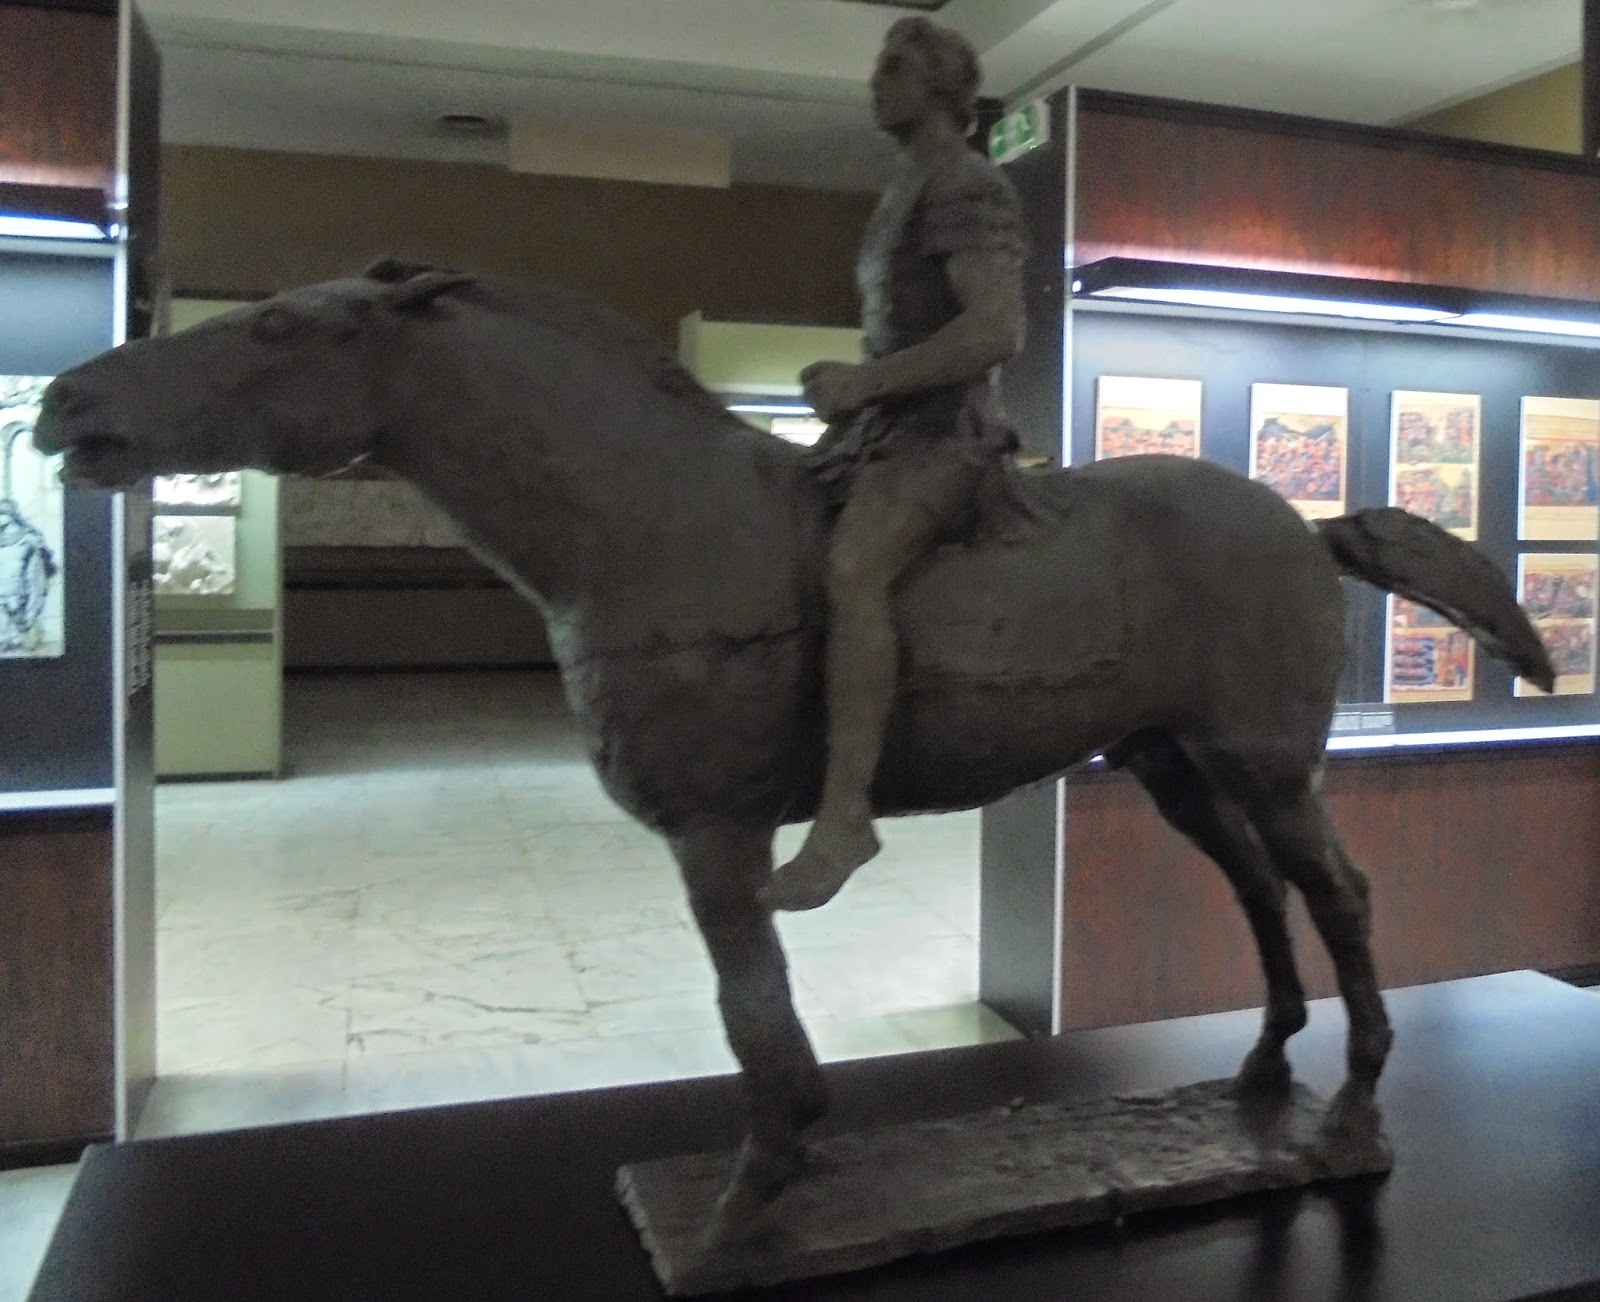 το έργο Ο Μέγας Αλέξανδρος Έφιππος του Γιάννη Παππά στο Πολεμικό Μουσείο των Αθηνών